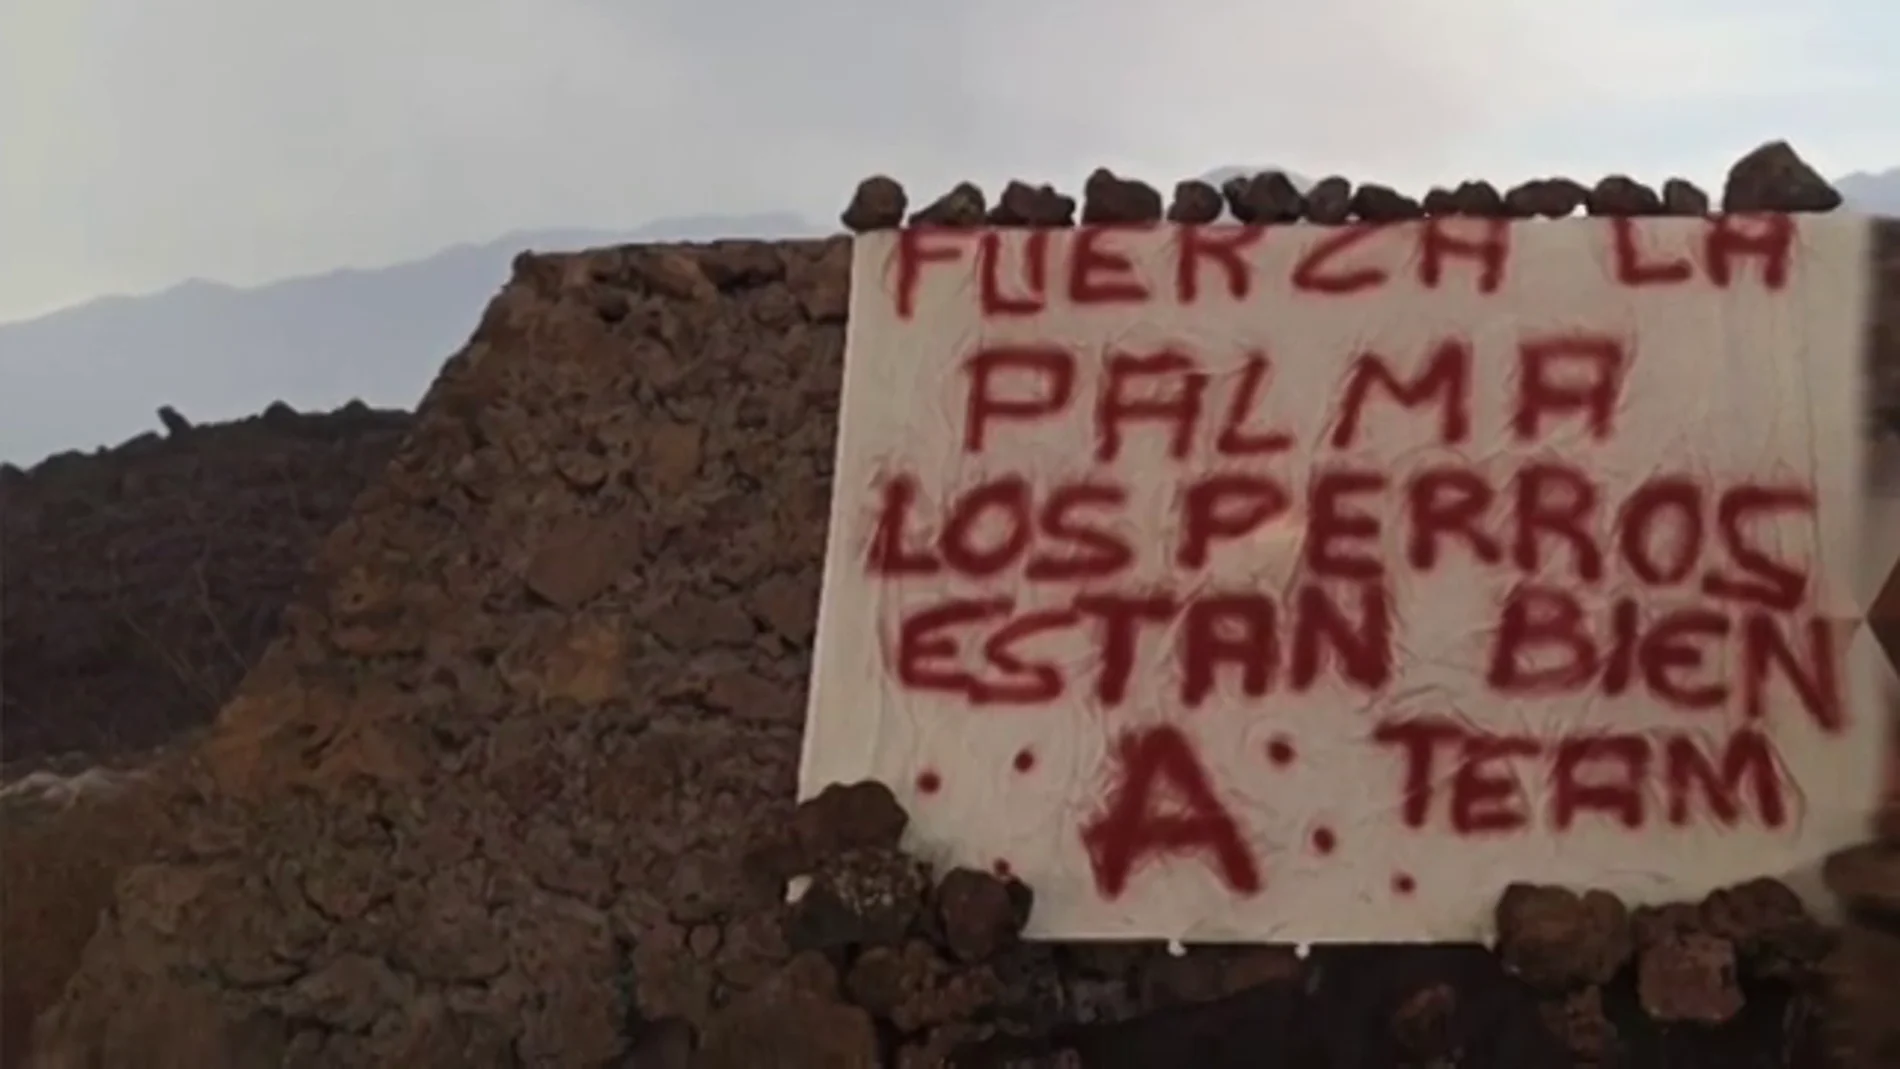 "Los perros están bien": el vídeo (con cartel incluido) del 'Equipo A' sobre el misterioso rescate en La Palma